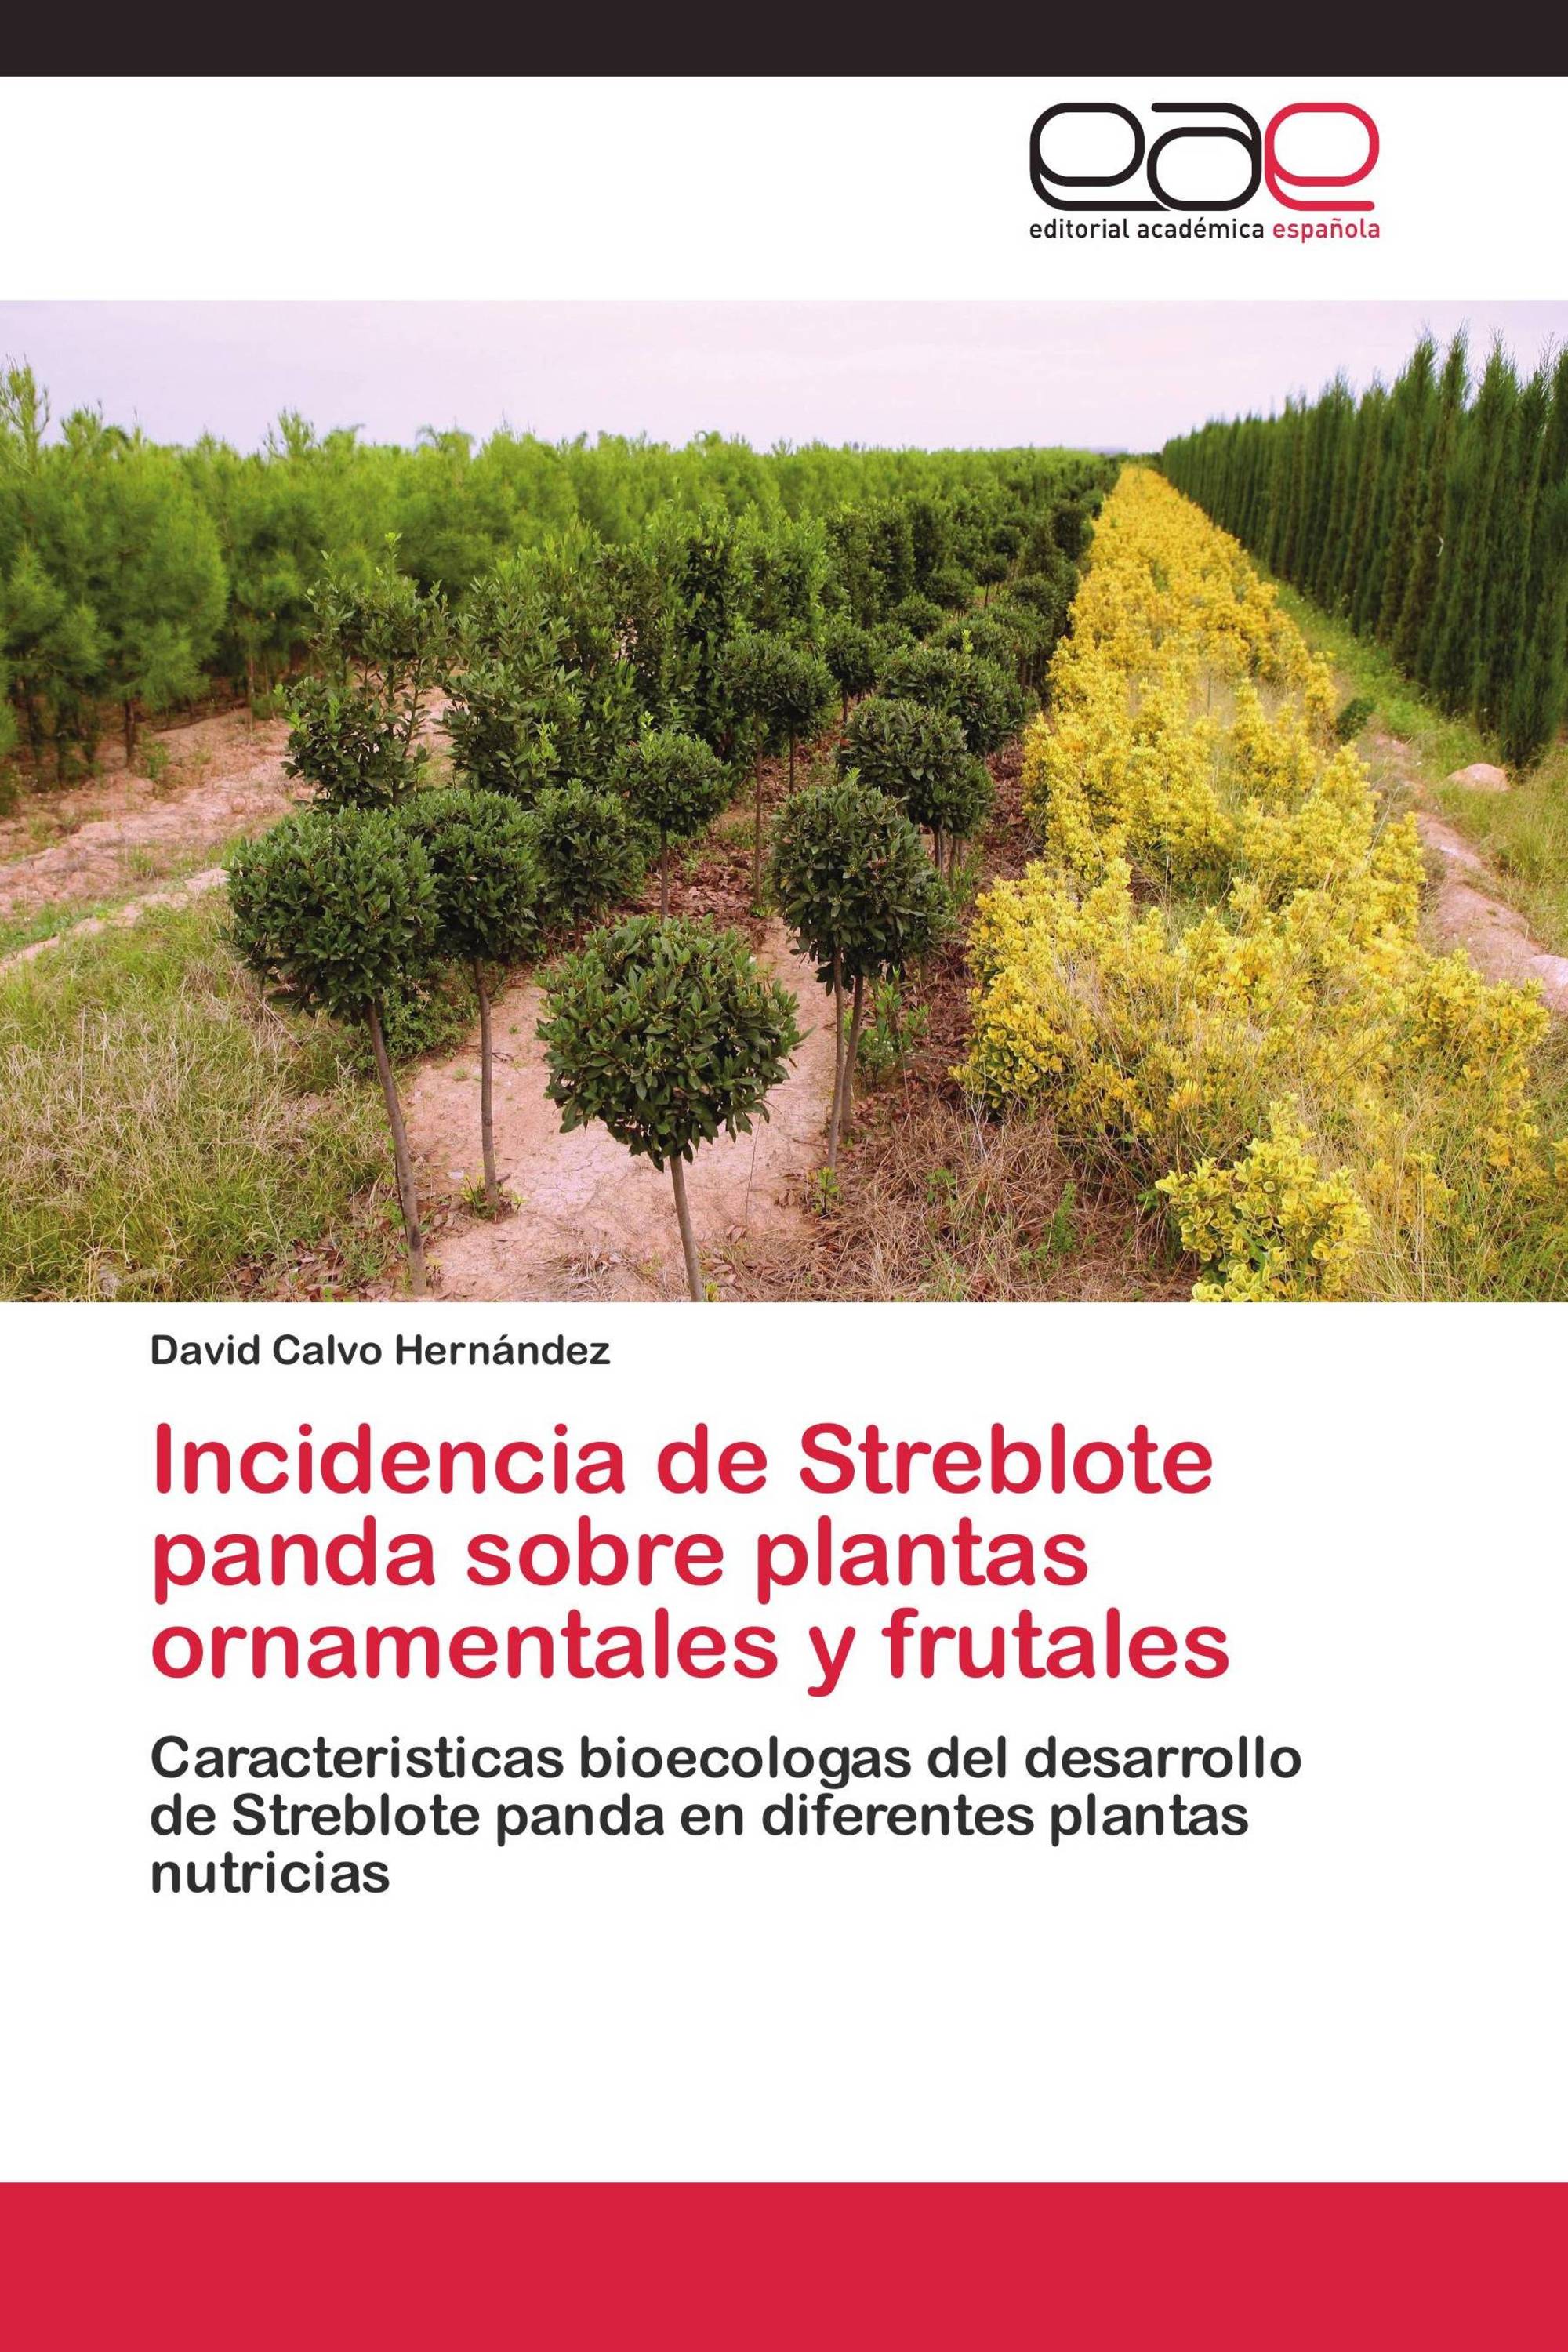 Incidencia de Streblote panda sobre plantas ornamentales y frutales